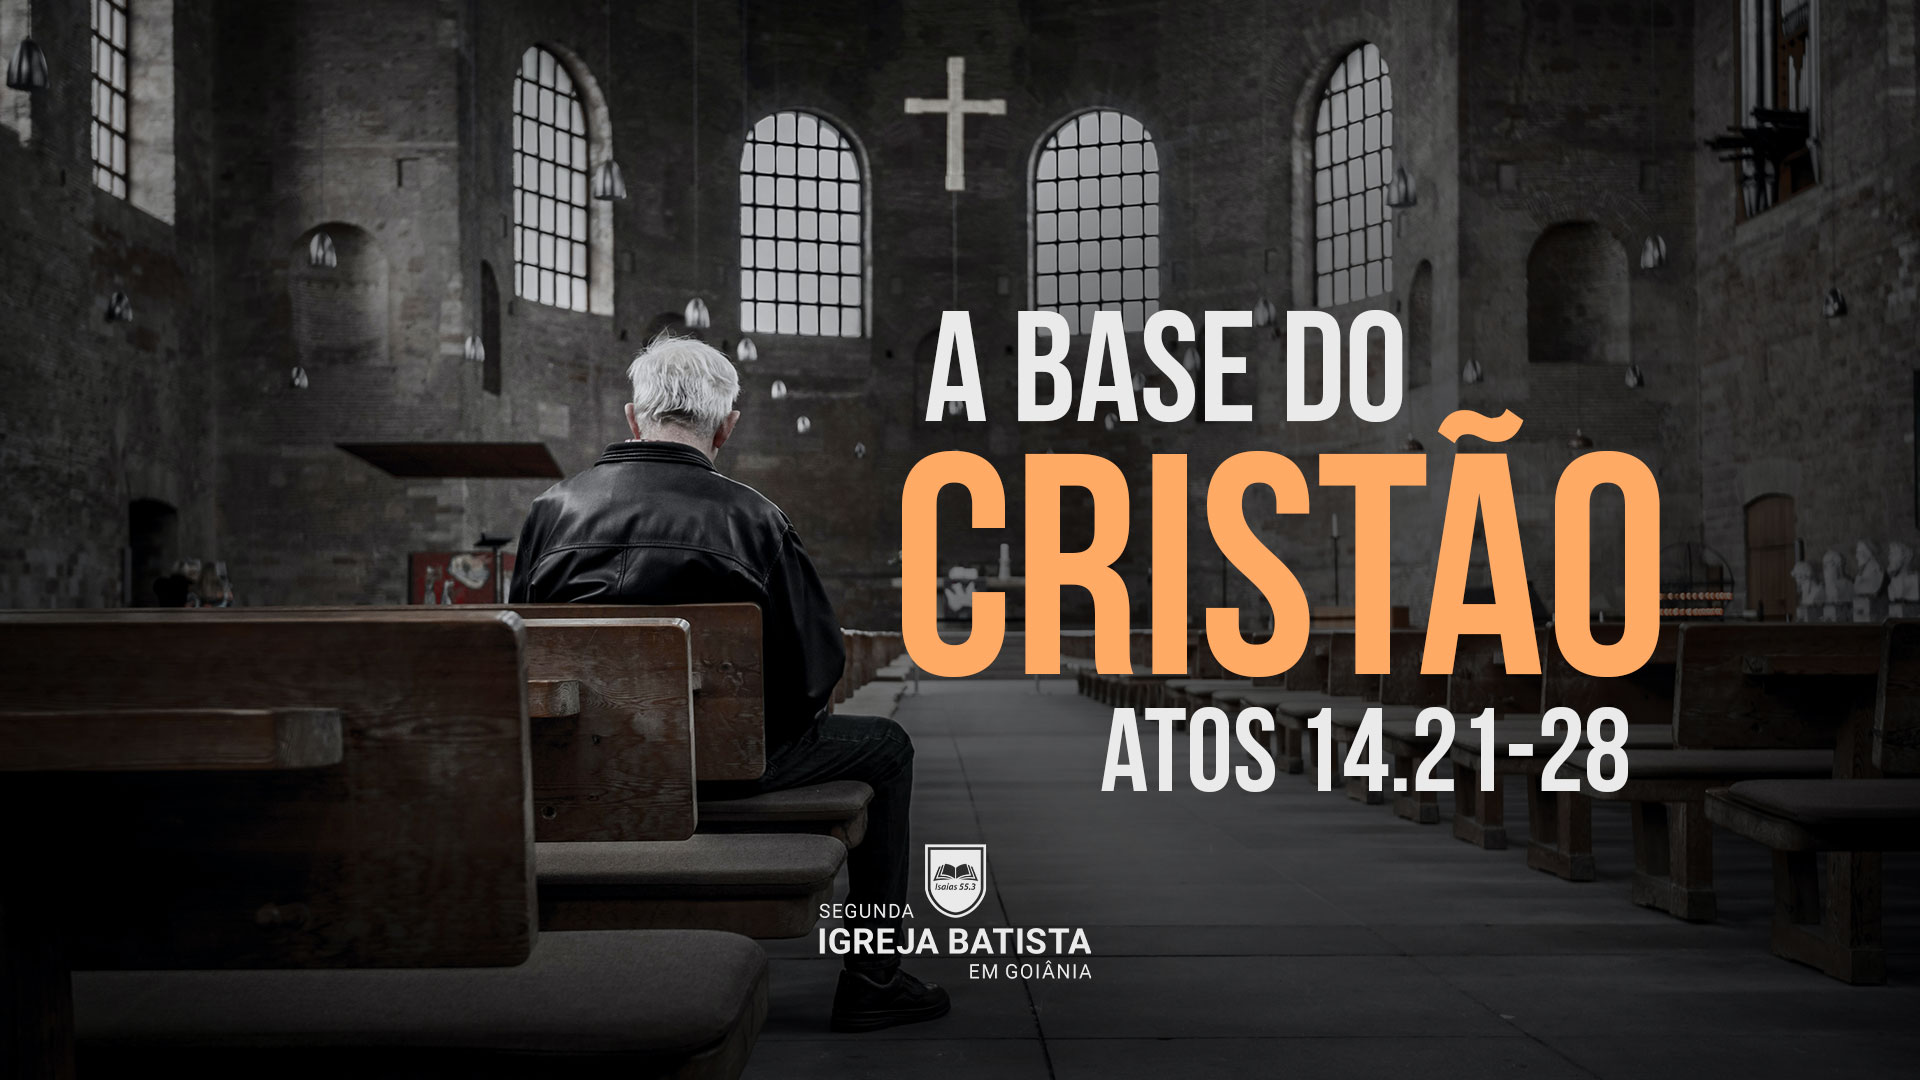 O Brasil é o país mais “crente” do mundo? - Aliança Cristã